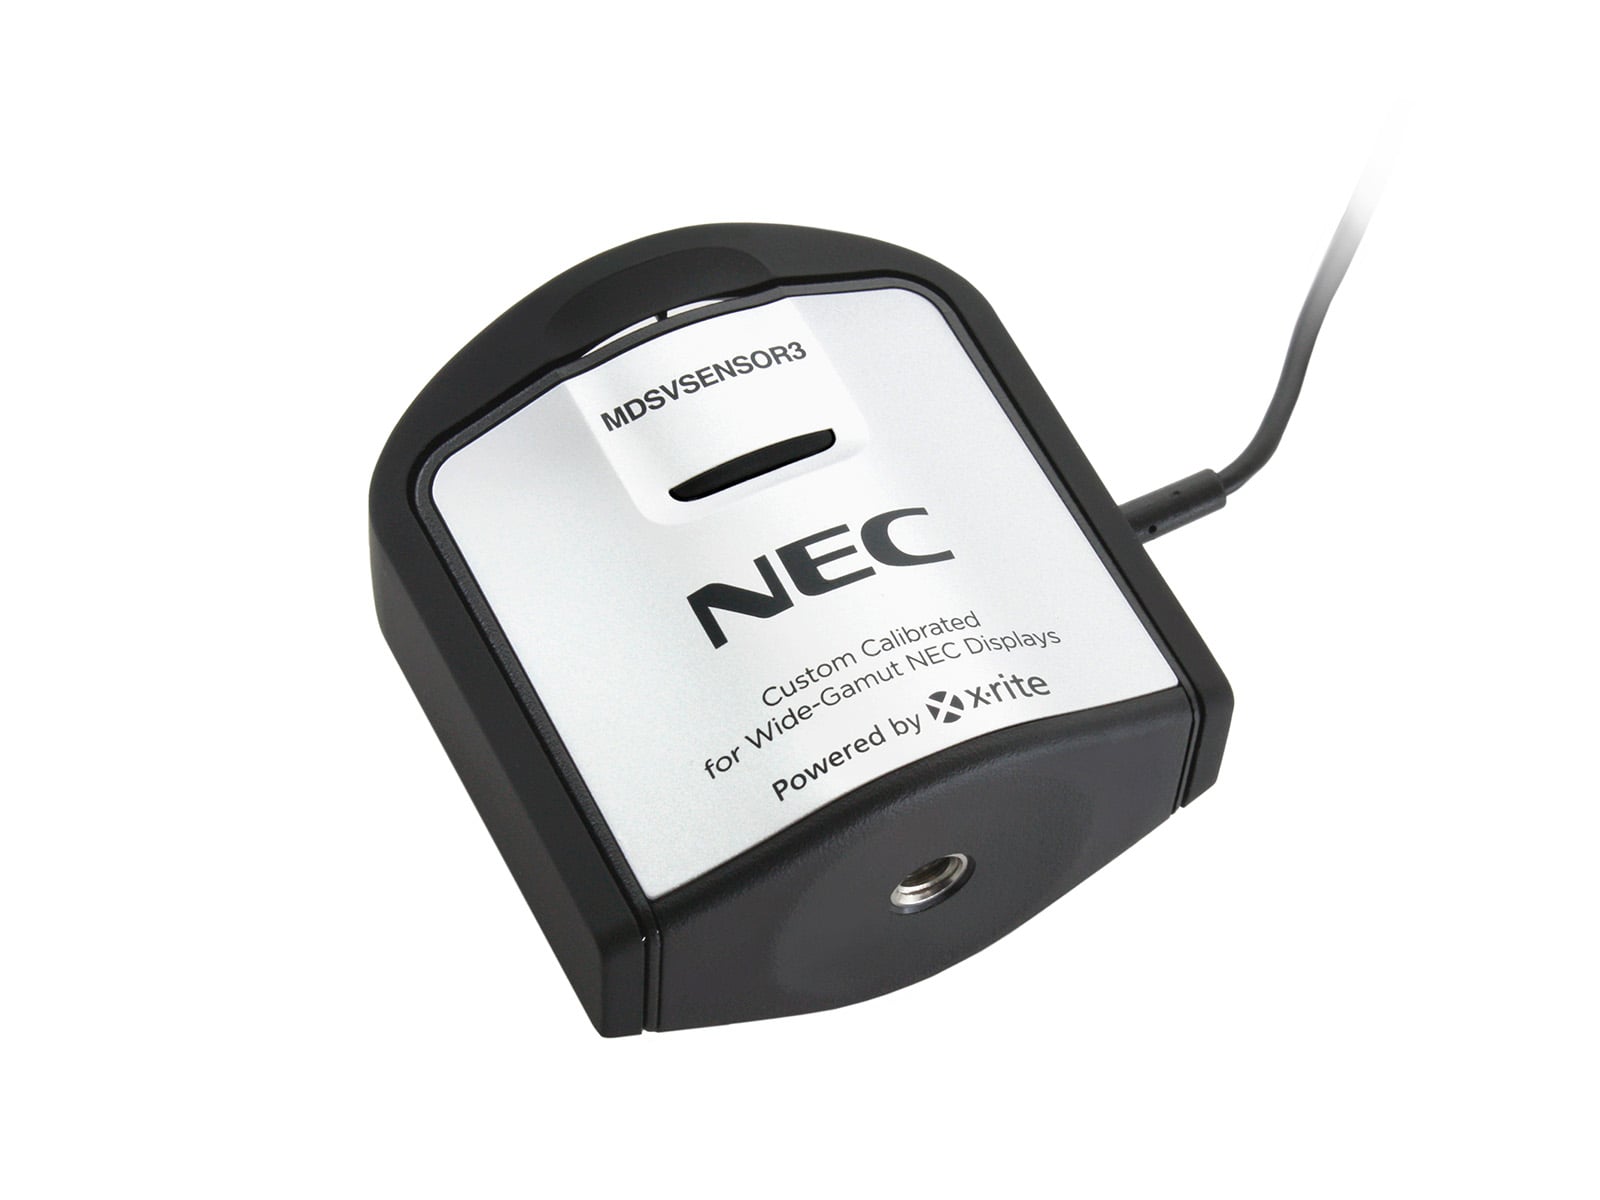 Capteur d'étalonnage d'affichage médical couleur NEC SpectraSensor Pro (MDSVSENSOR3) Monitors.com